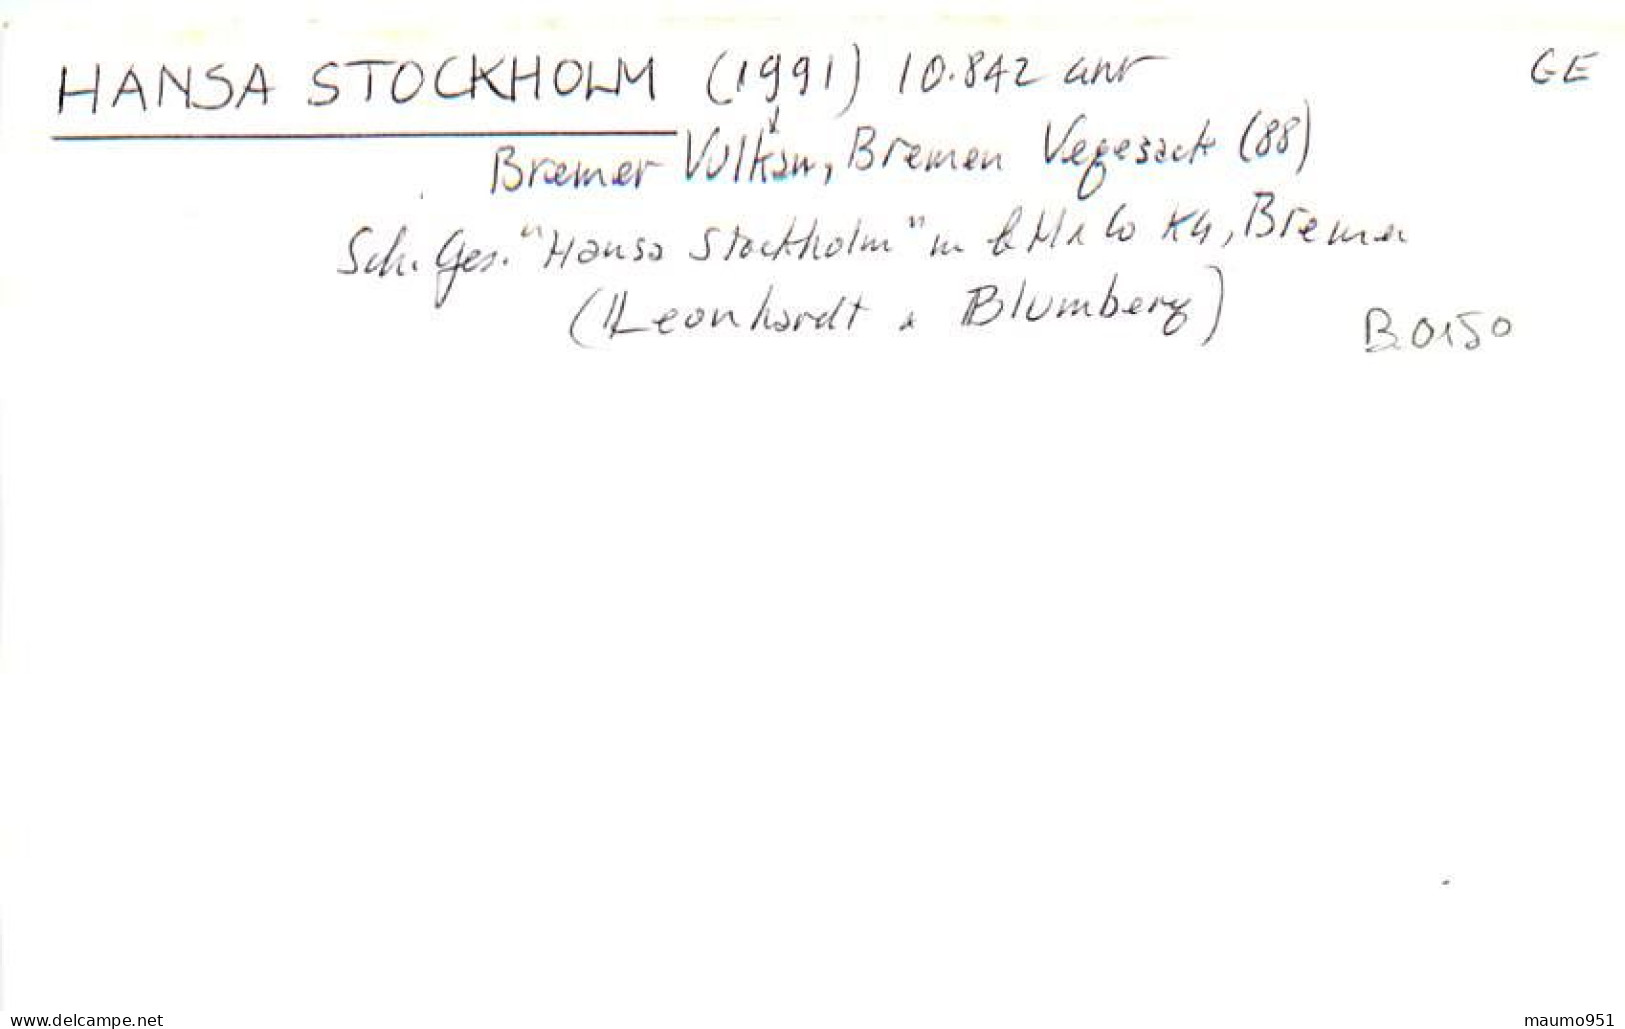 150 CLICHE BATEAU COMMERCE - LE HANSA STOCKHOLM 1991 - CATEGORIE 10842TONNES - FORMAT CPA N° B 0150 - Barche